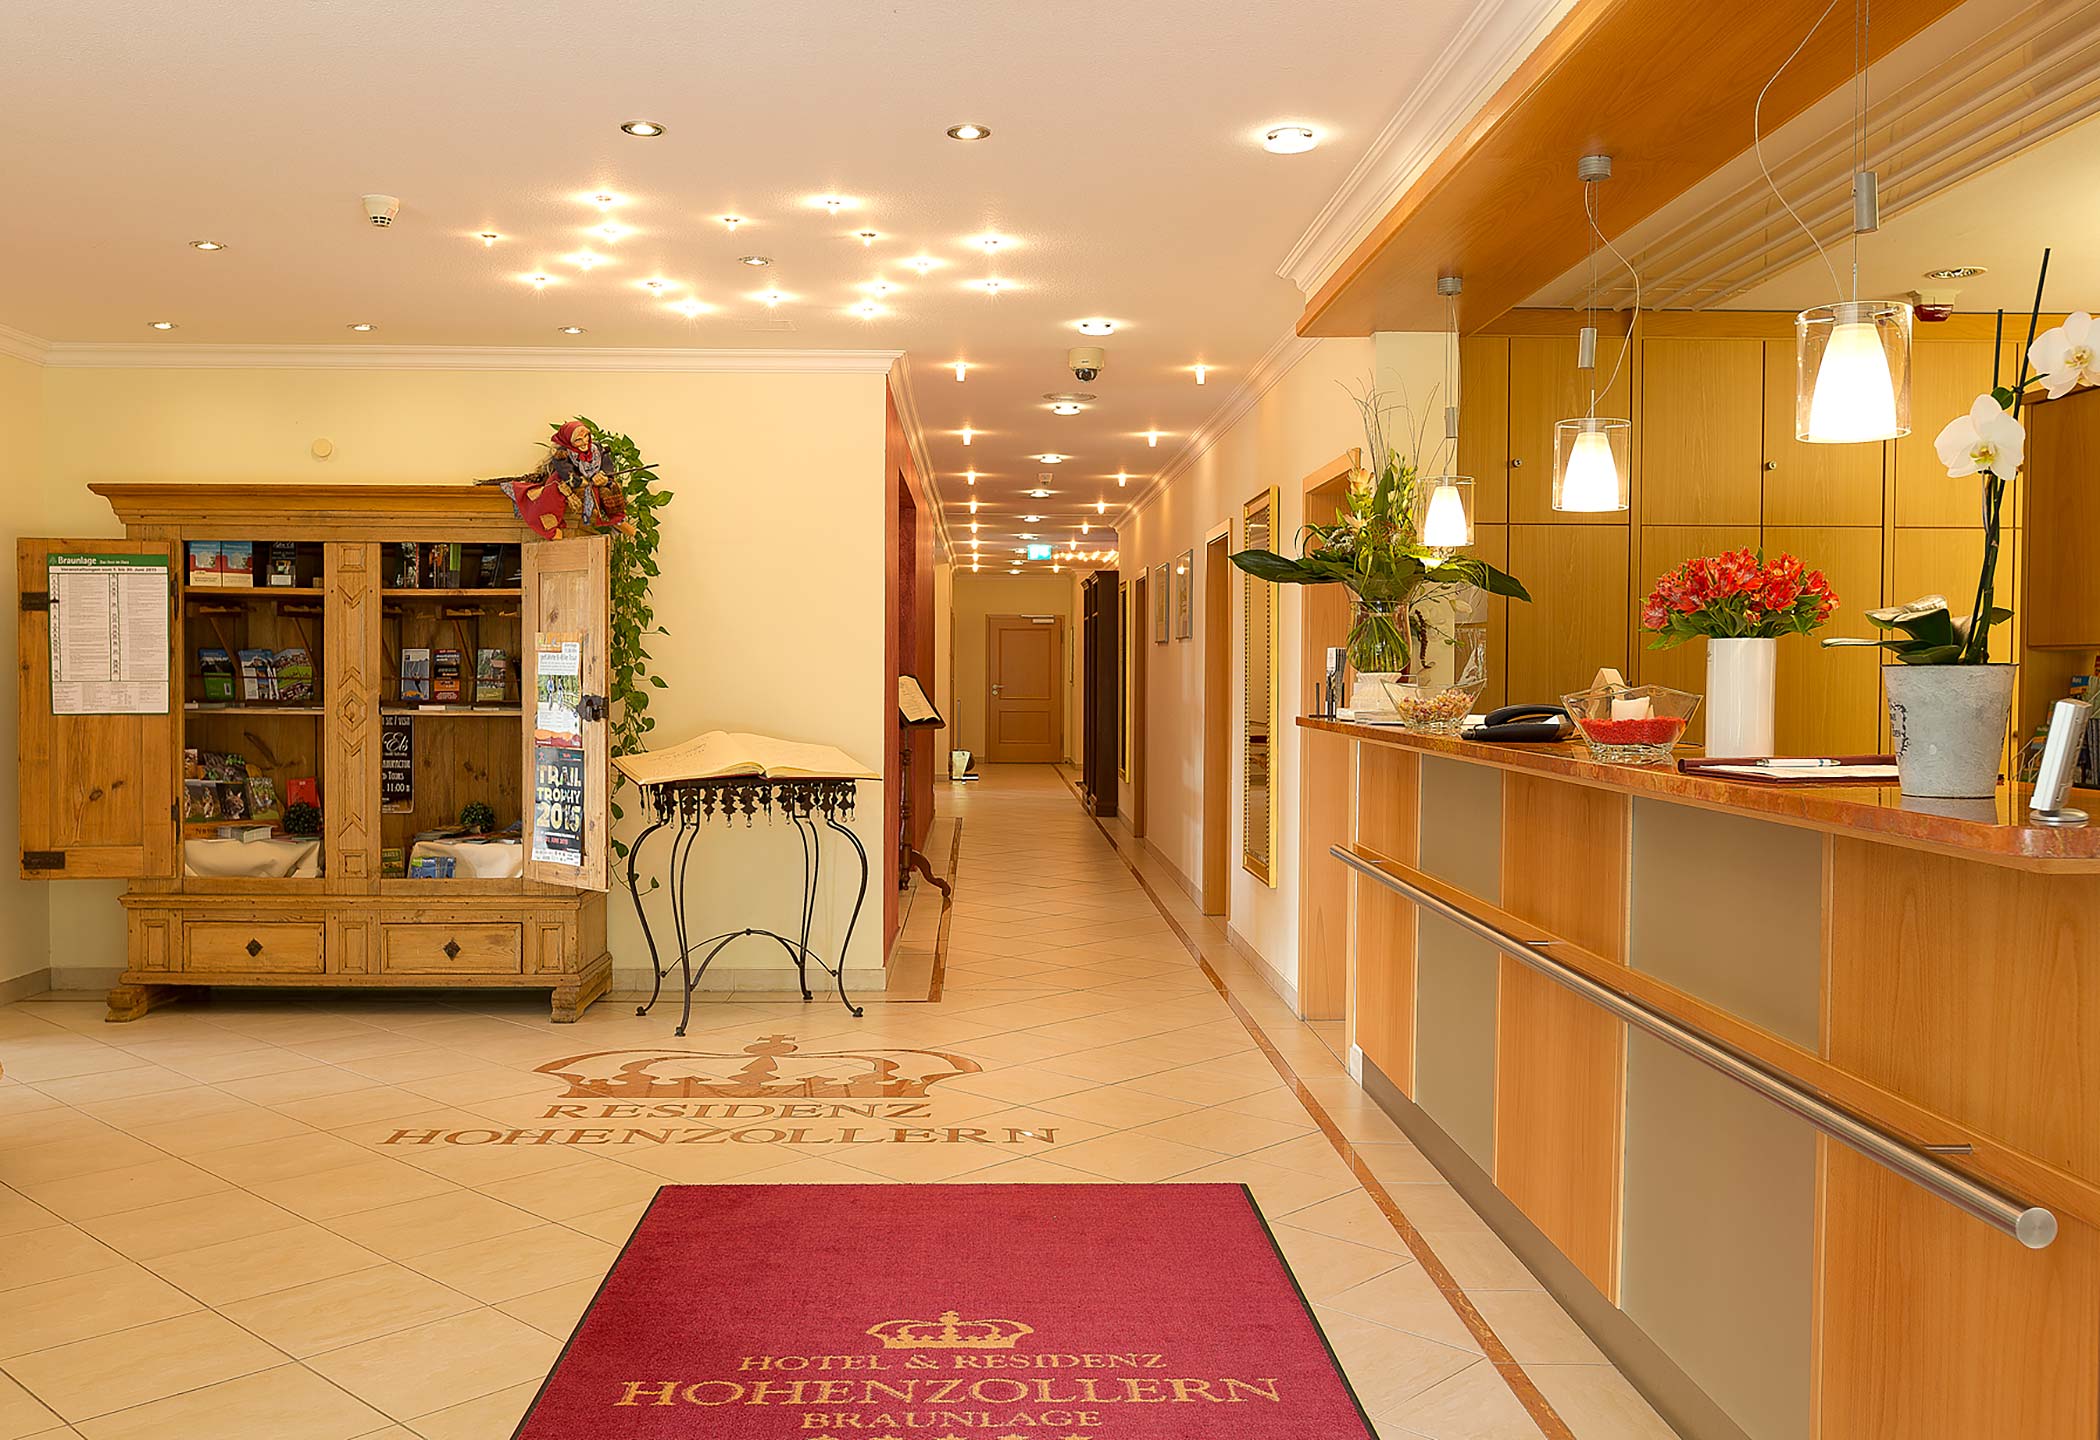 Hotelfotografie - Hotel Residenz Hohenzollern in Braunlage